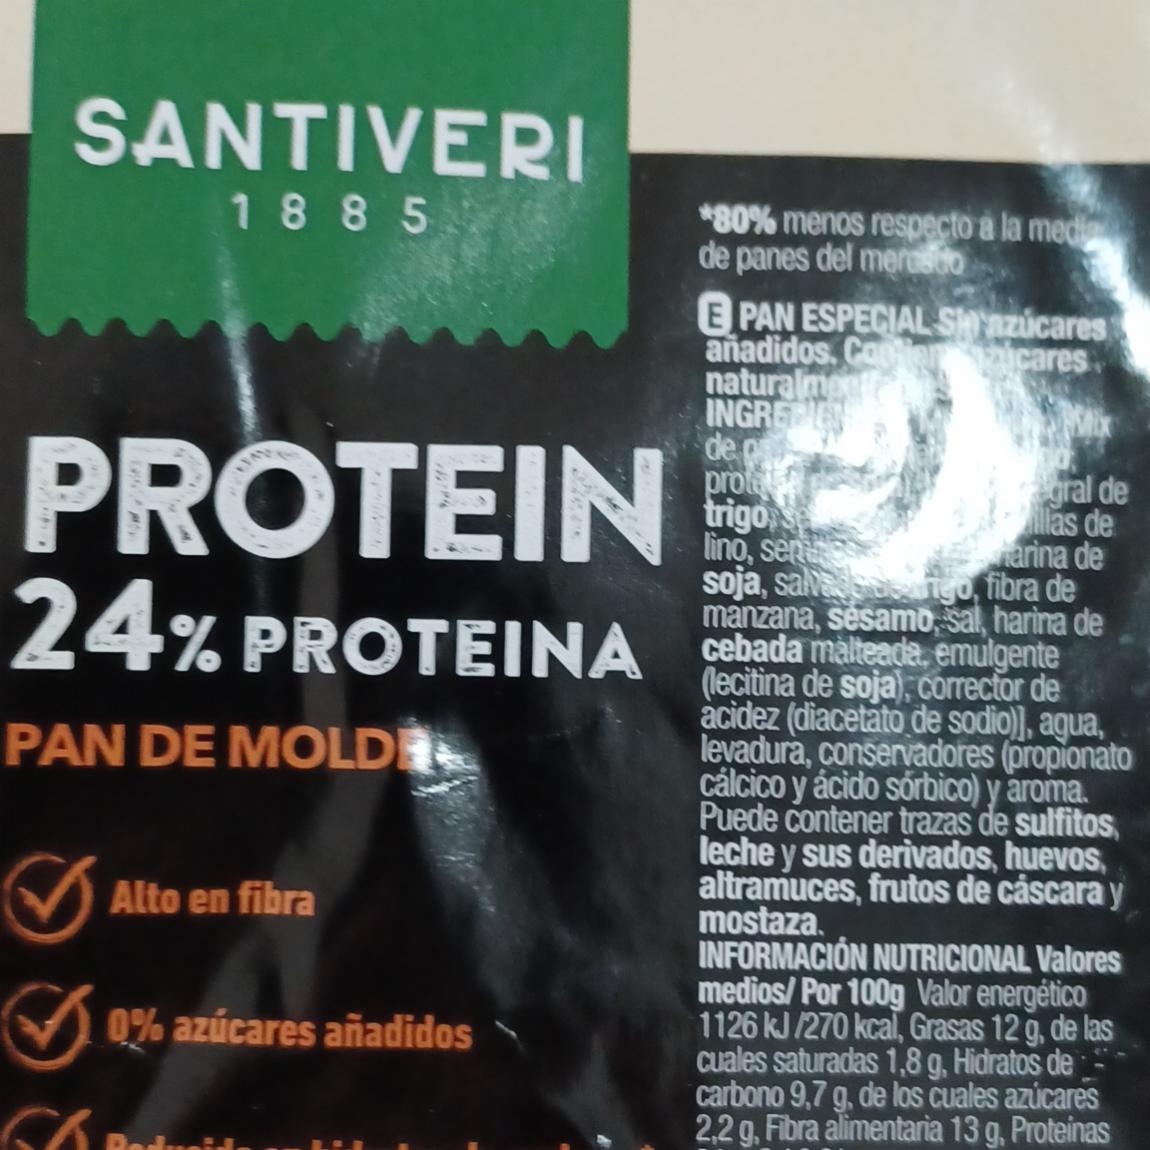 Fotografie - Pan de molde Protein Santiveri